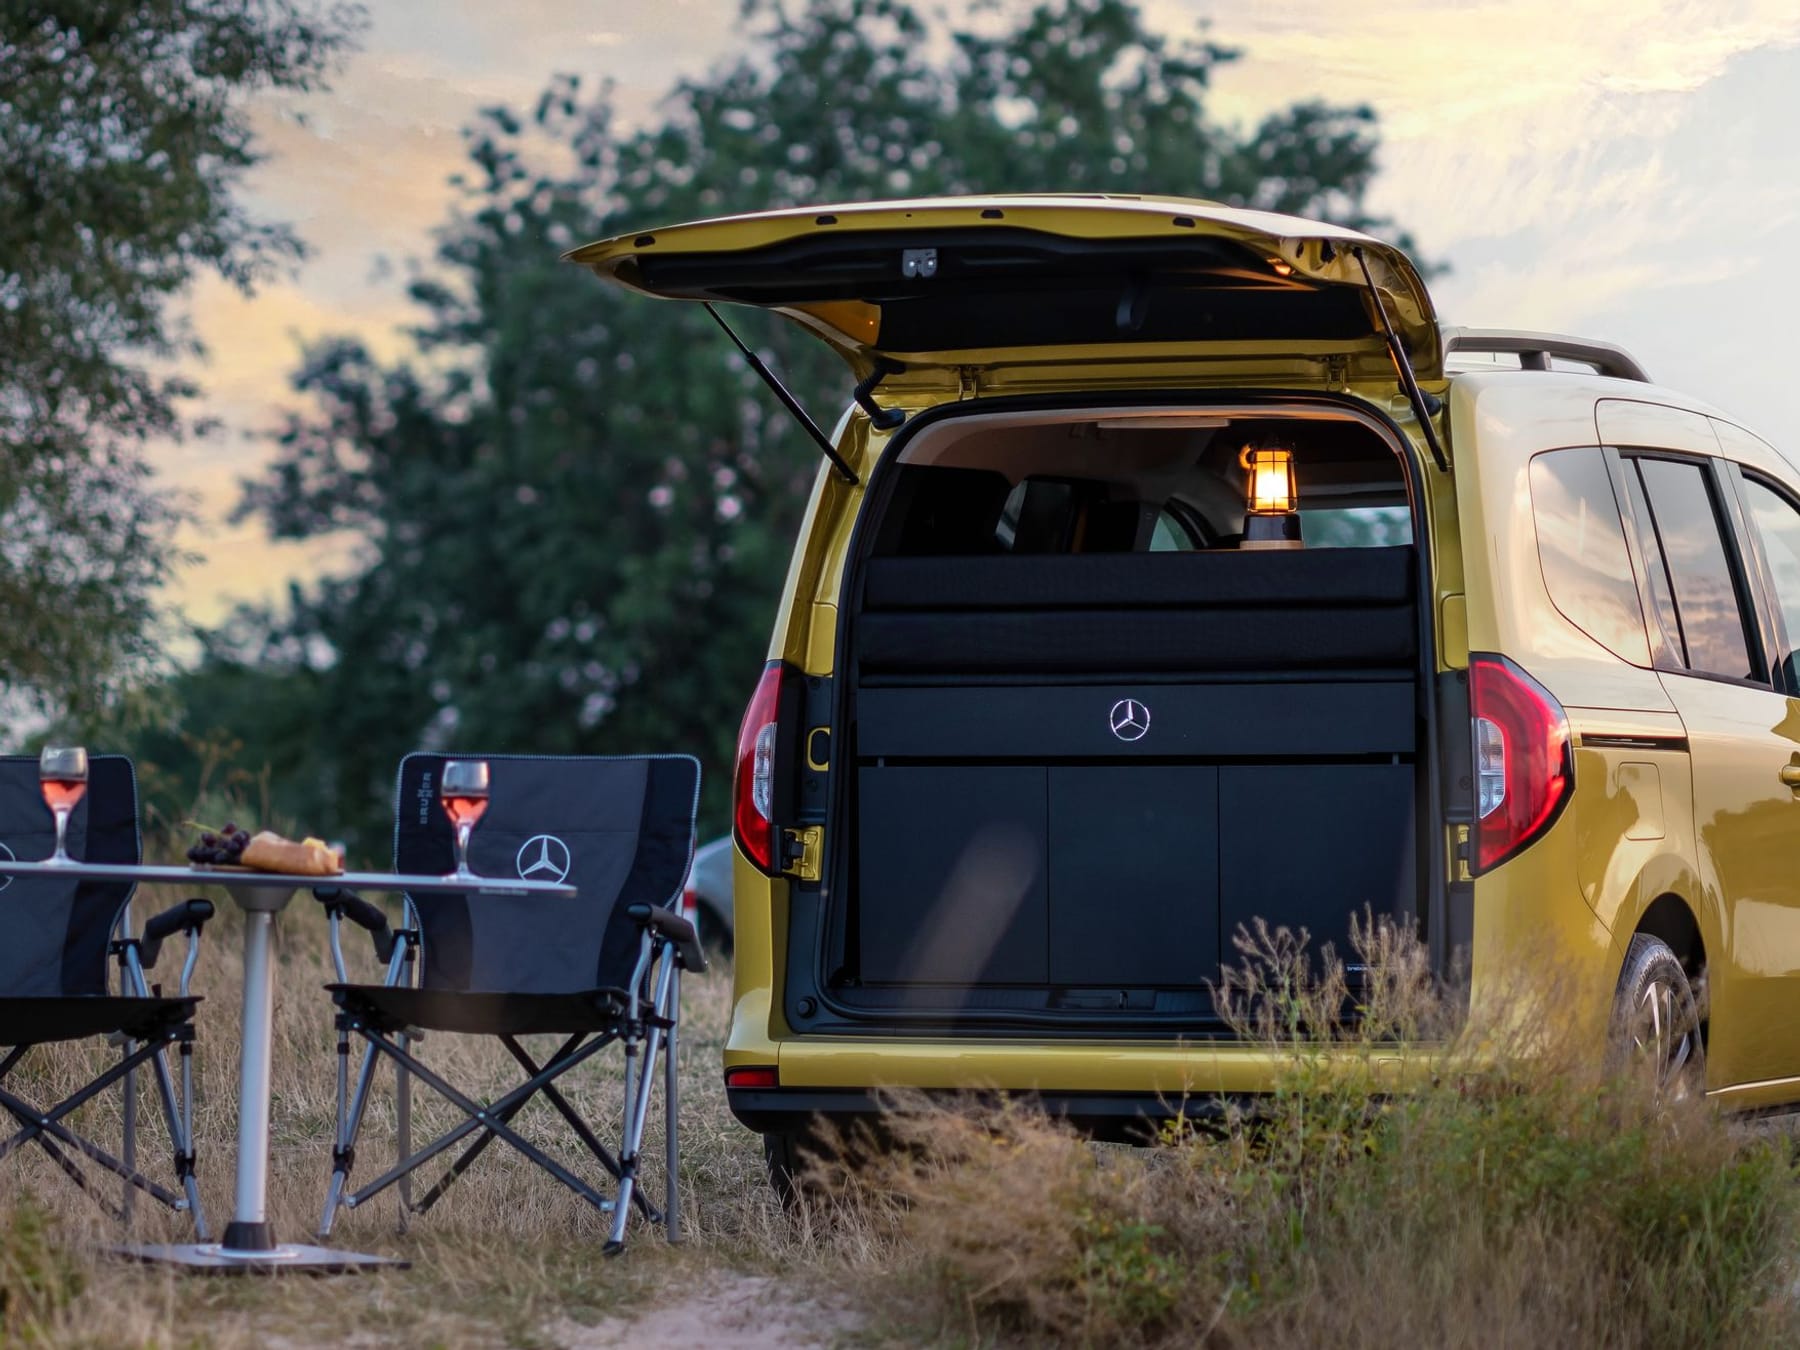 Nissan Townstar Elektro-Camper feiert Premiere auf dem Caravan